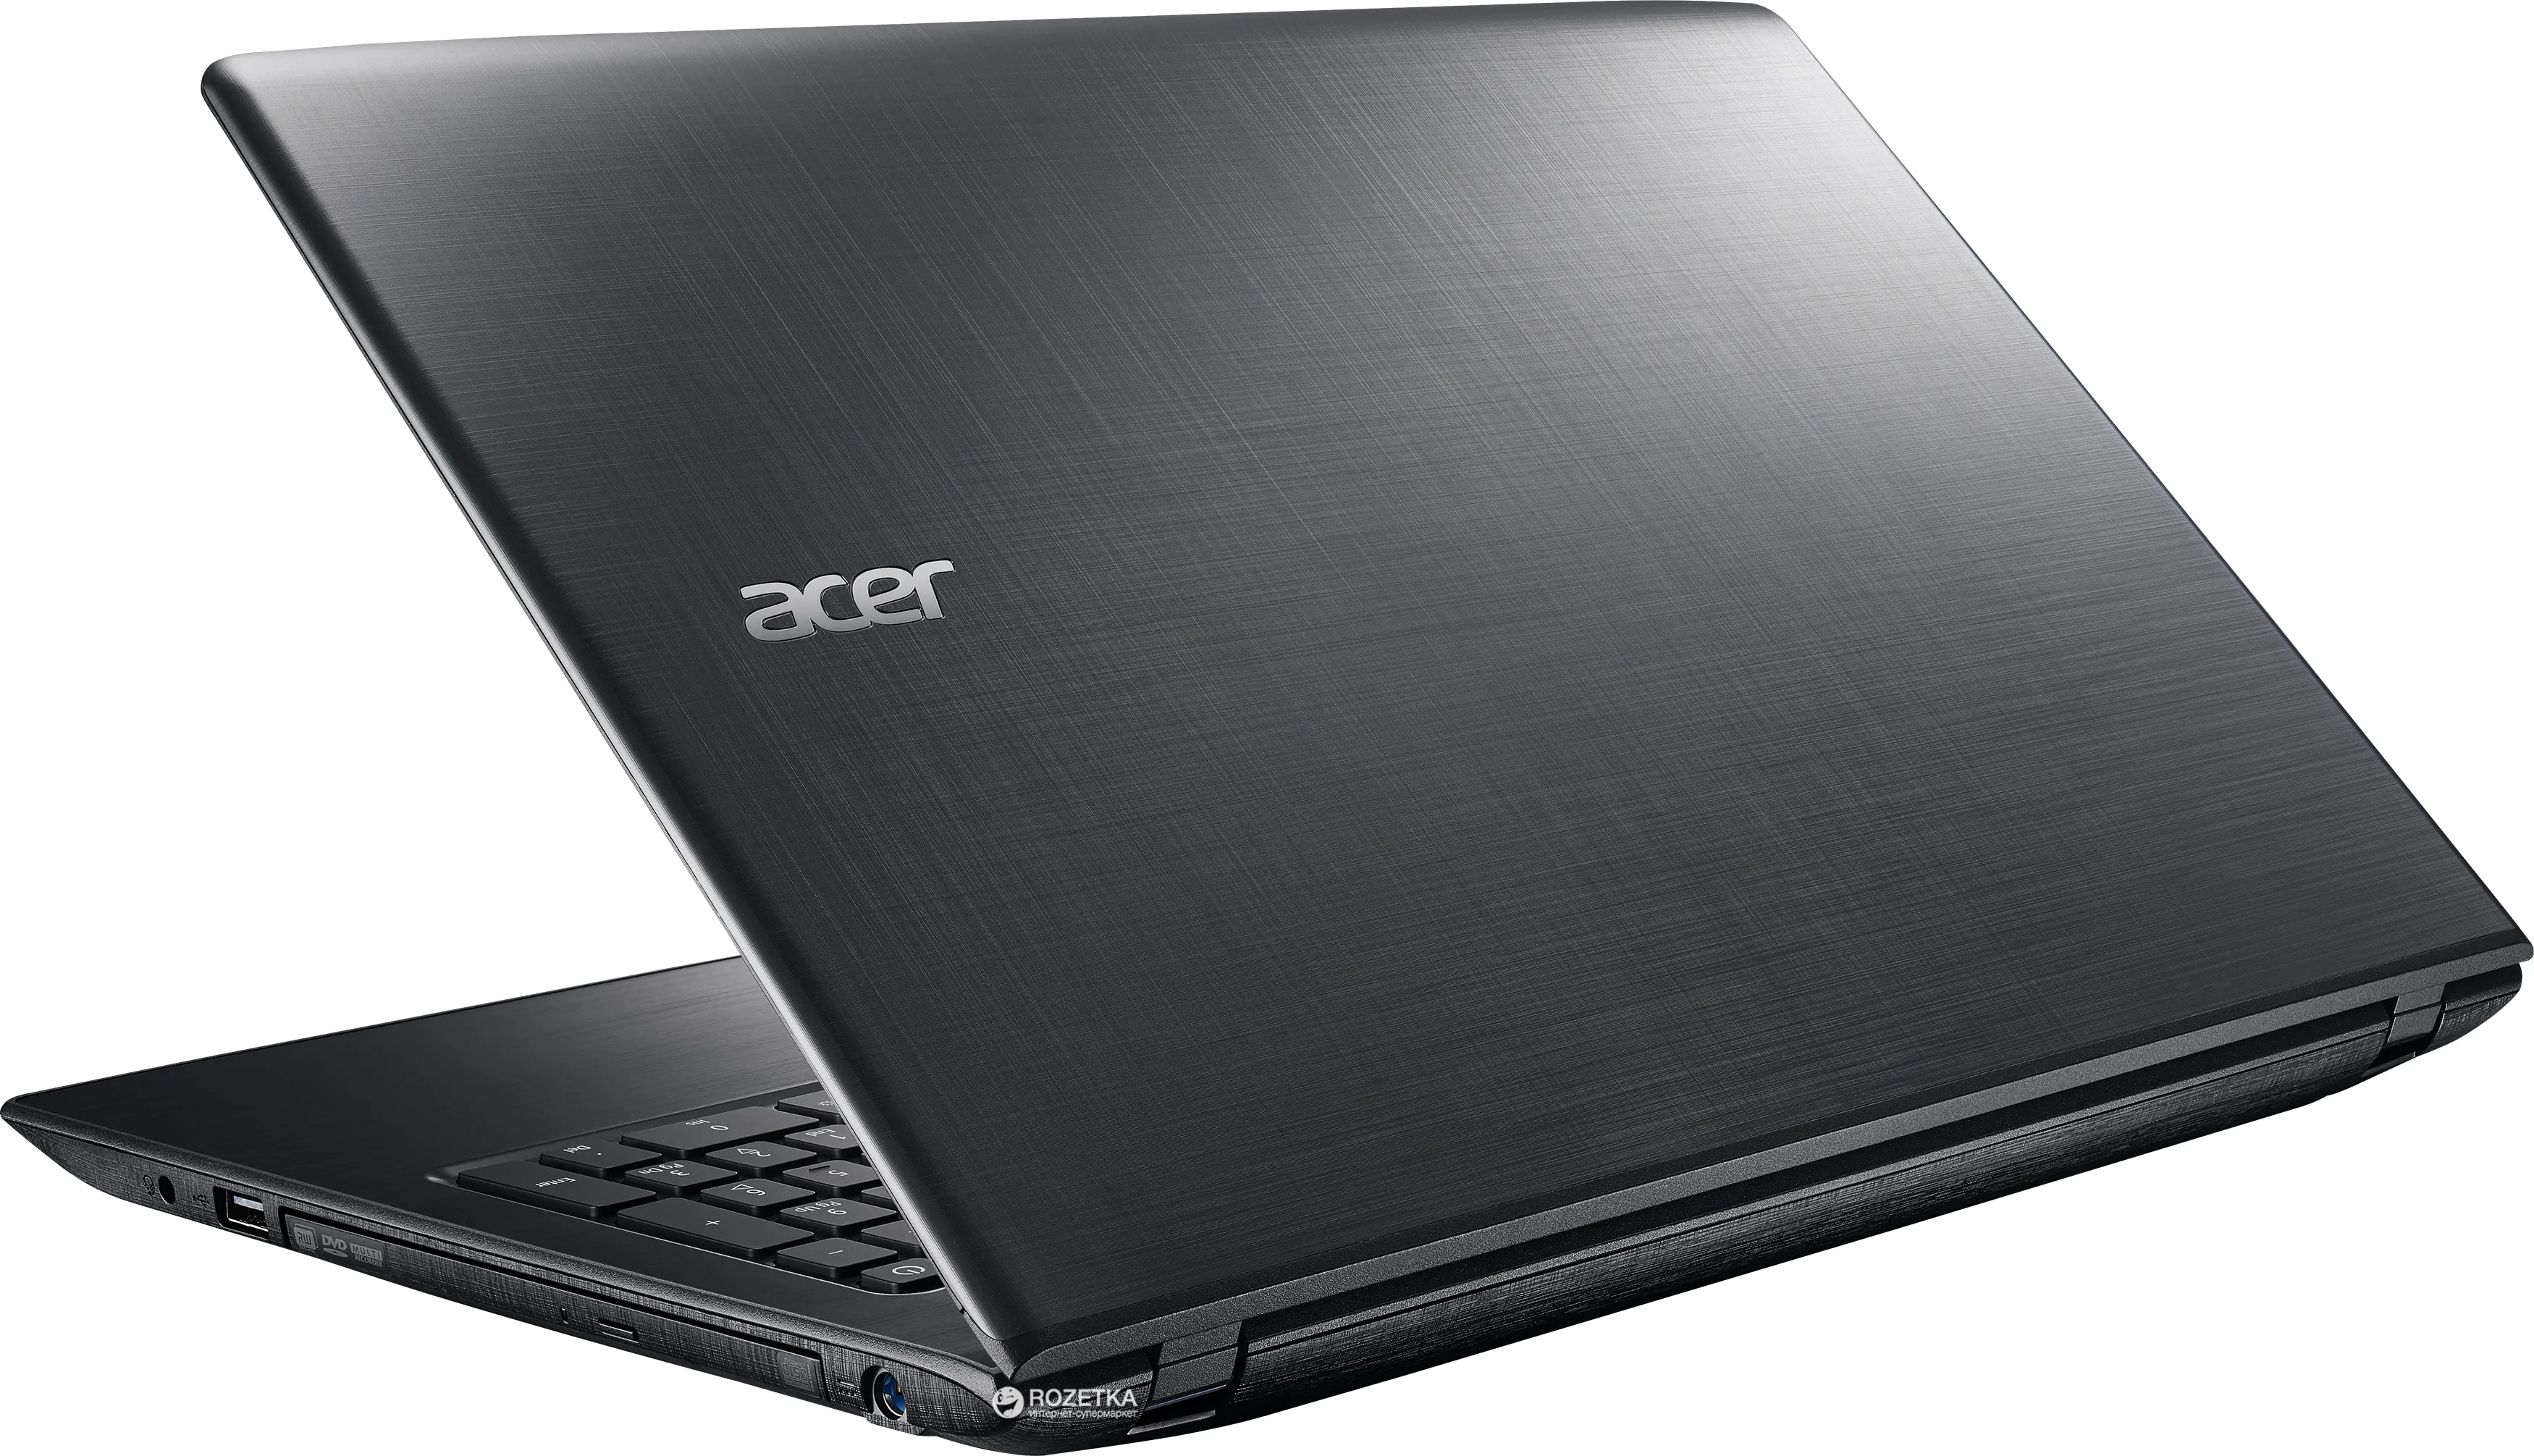 Noutbuk Acer ES15 / Celeron 3060/ DDR3 2 GB/ 500GB HDD /15.6" HD LED/ UMA/ DVD / RUS#7